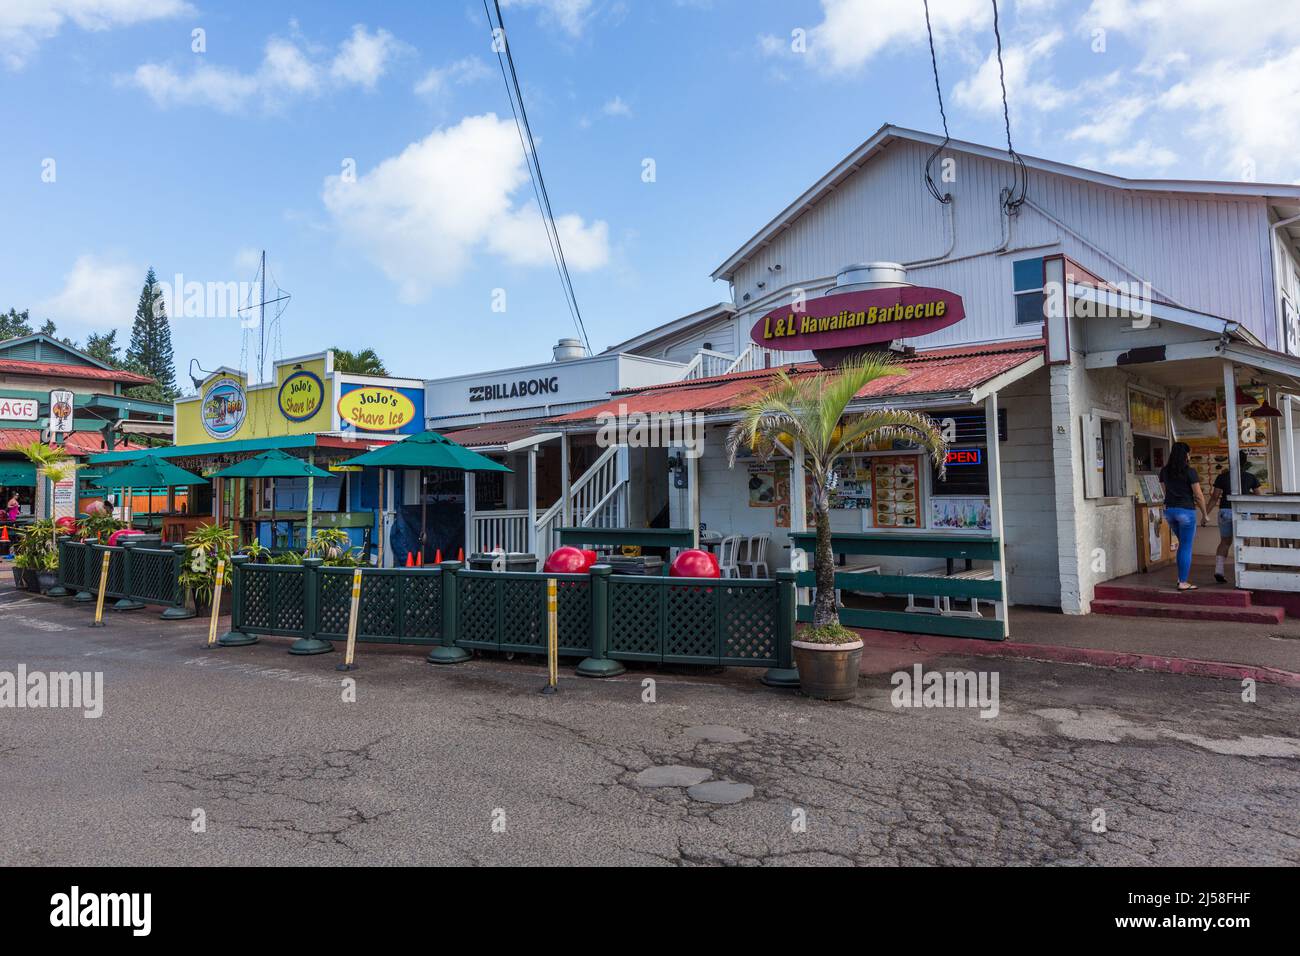 Restaurantes de comida rápida y tiendas turísticas en un centro comercial en Hanalei, Kauai, Hawaii. Foto de stock